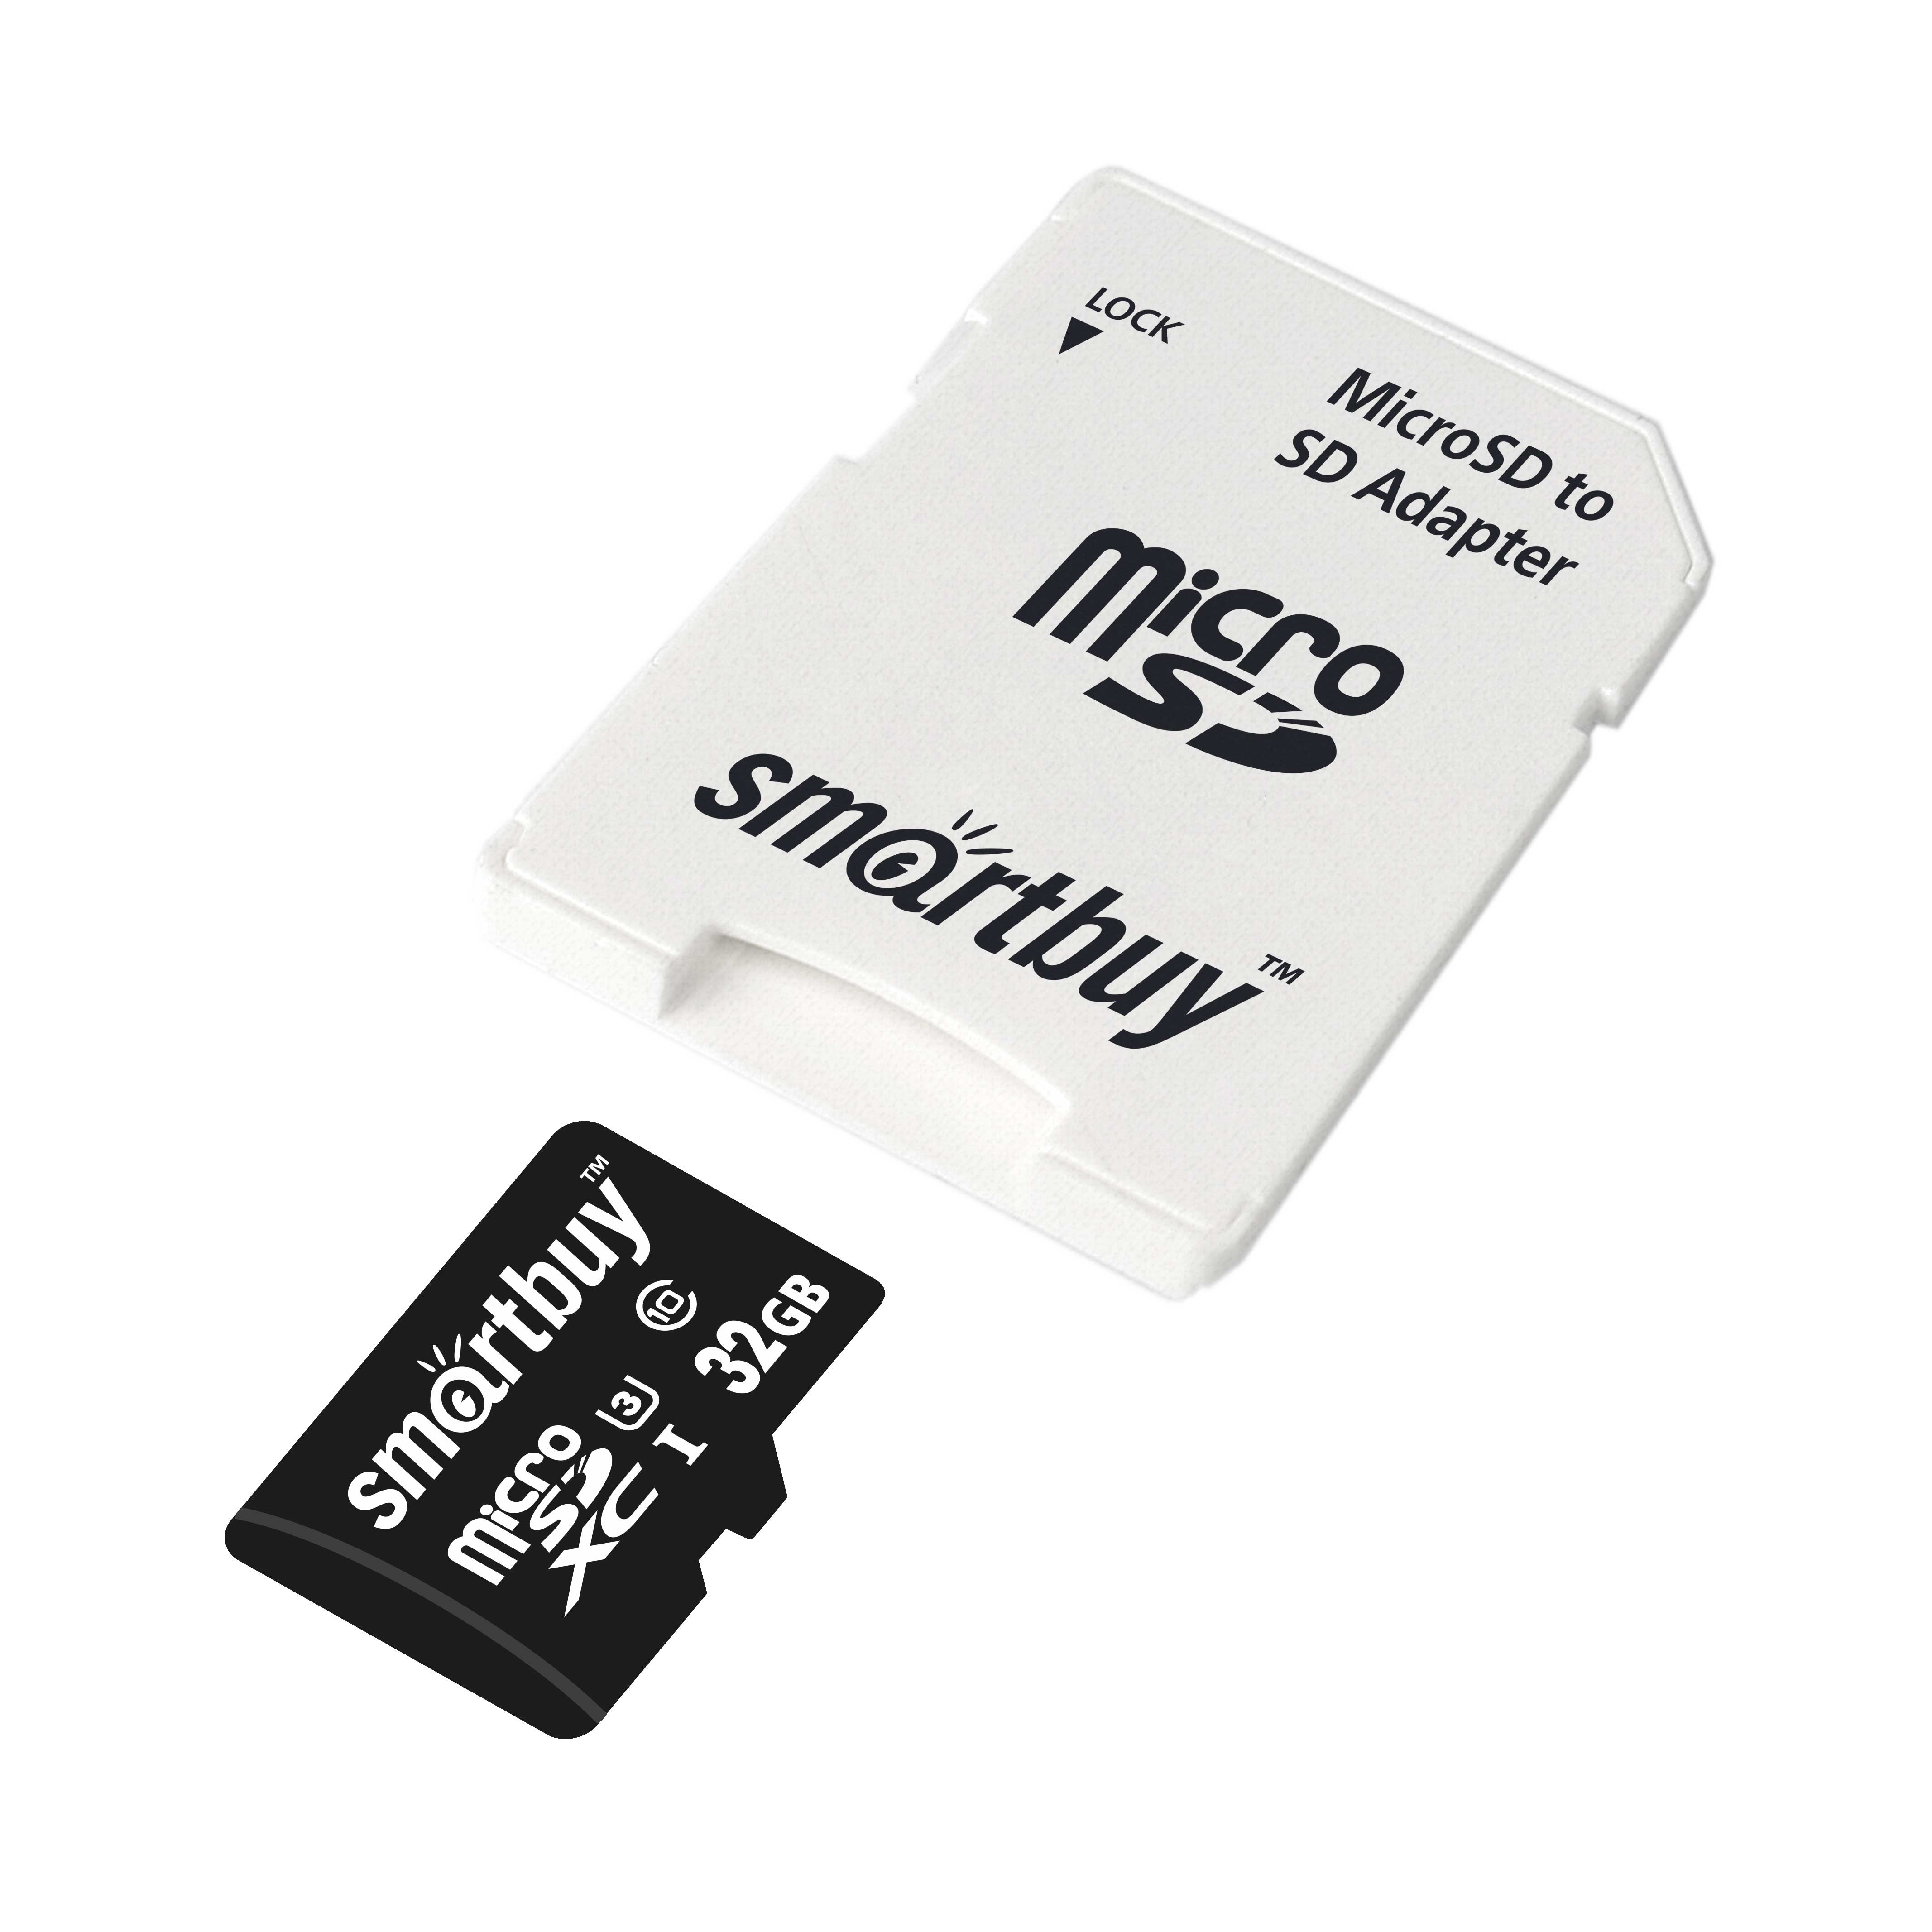 Пам.MicroSDHC,32Gb Smart Buy (Class 10)  PRO U3 R/W:95/60 MB/s (с адаптером SD)